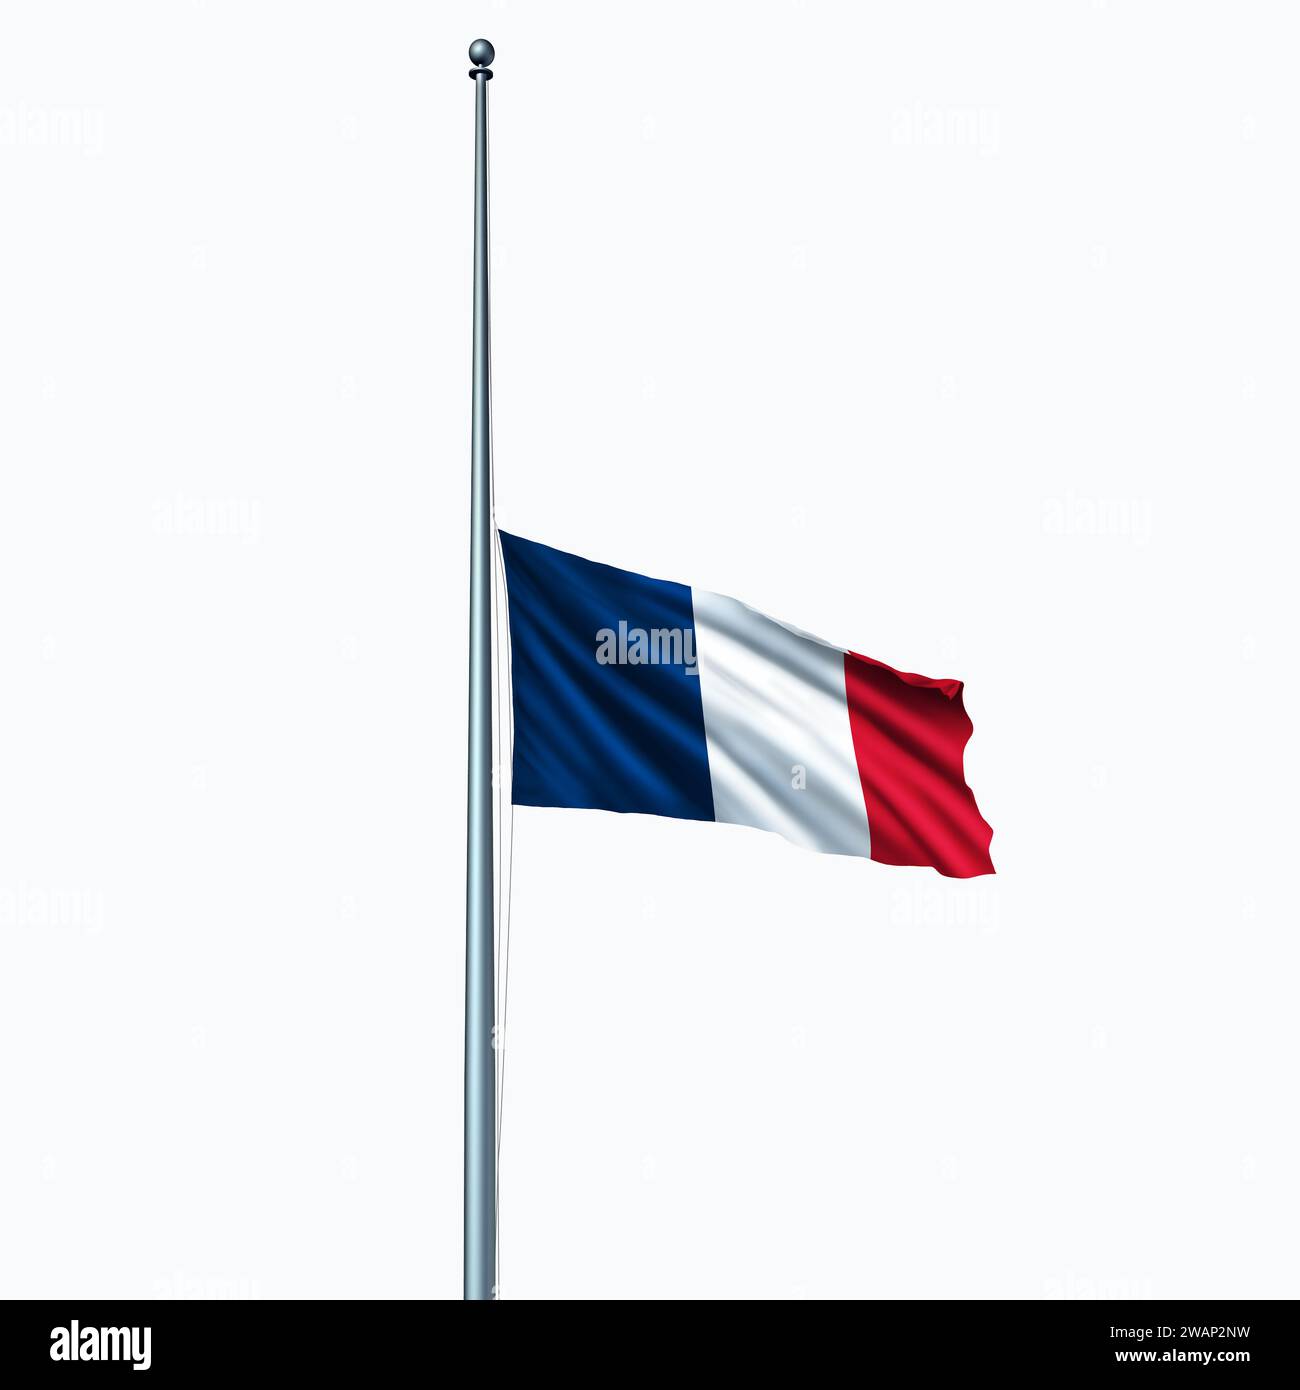 La Francia e i francesi in lutto come bandiera blu bianca e rossa a mezz'asta nel giorno della bandiera o del personale come icona d'onore rispetto e nazionale Foto Stock